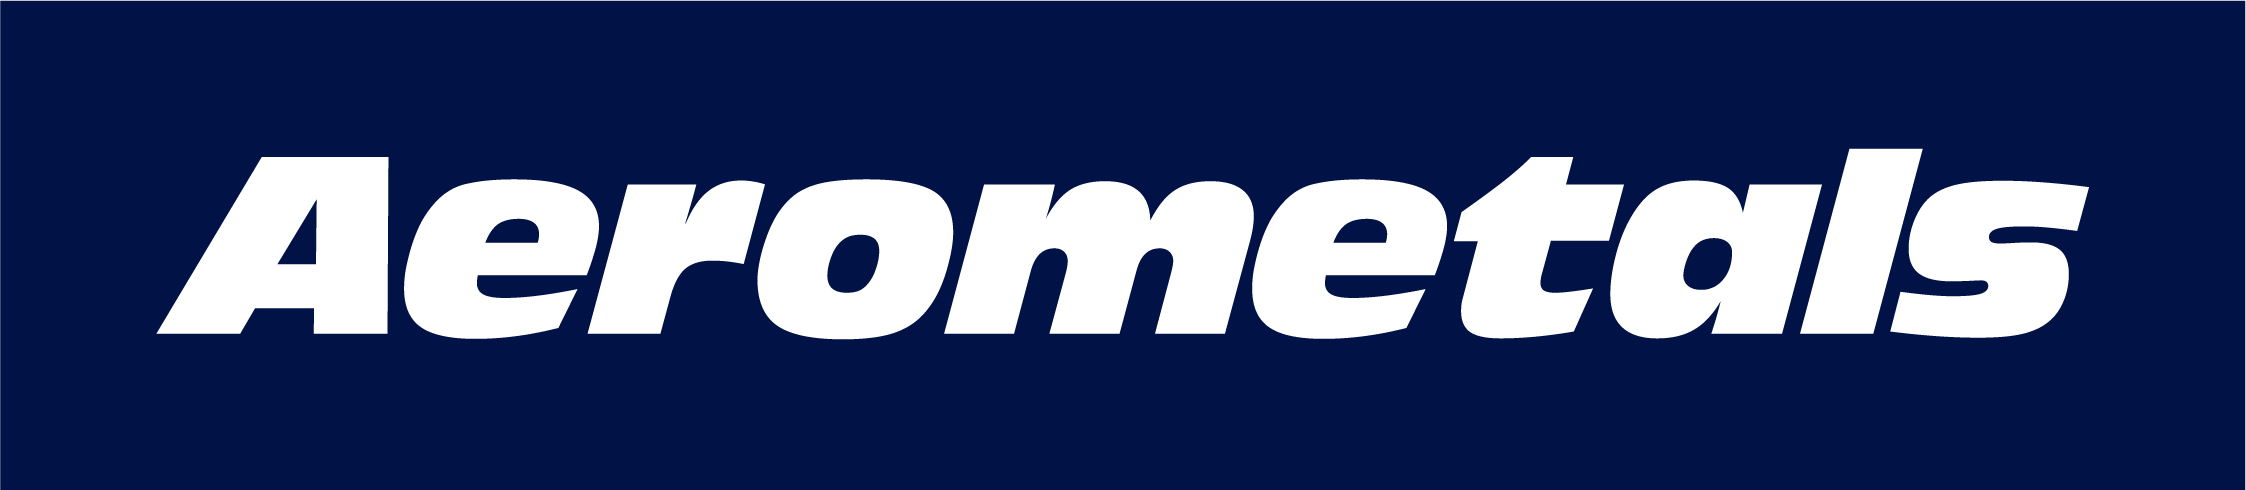 Aerometals Logo